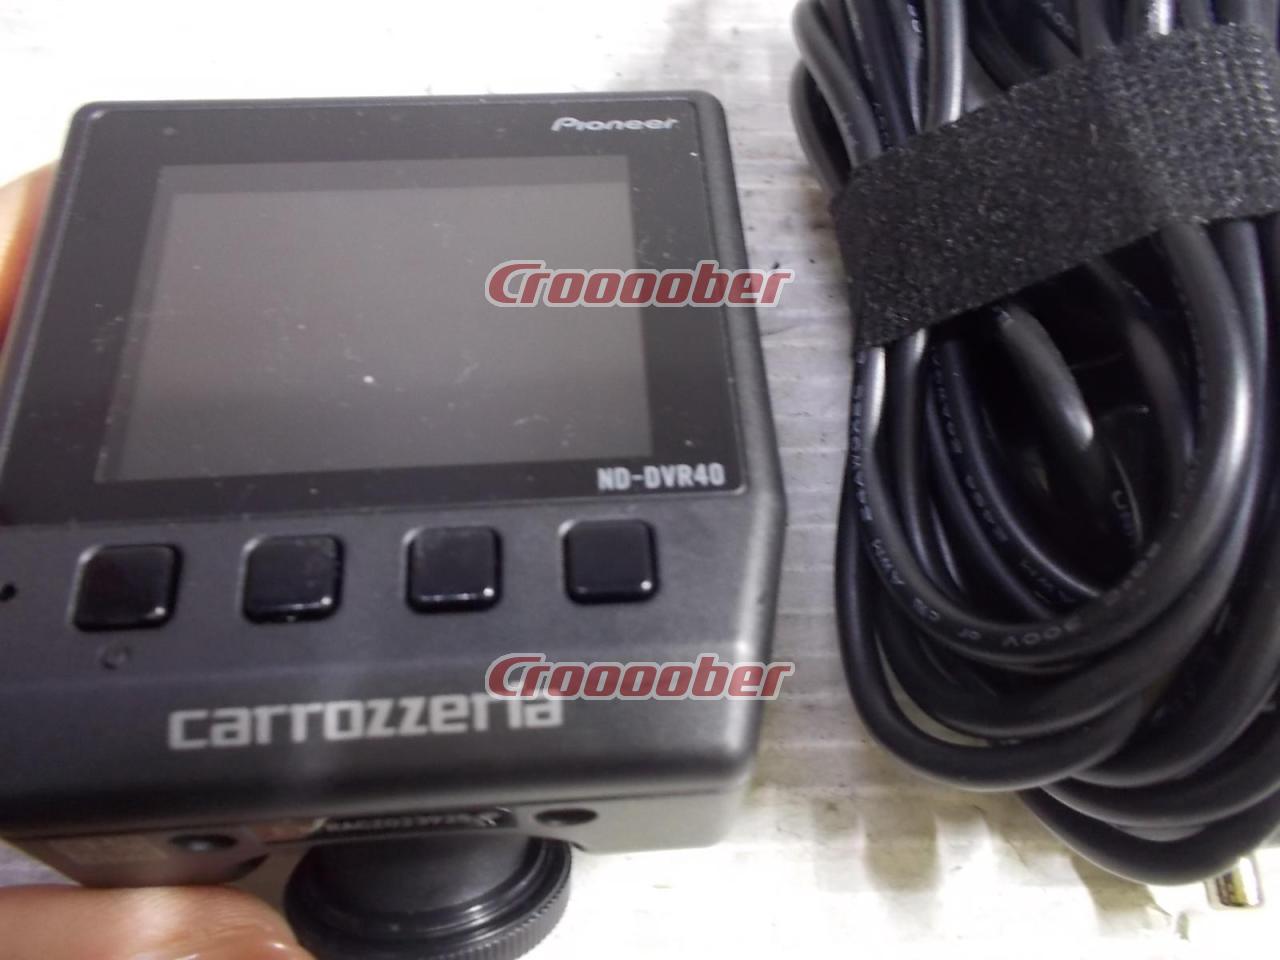 carrozzeria(カロッツェリア) ND-DVR40 ドライブレコーダー | カーAVアクセサリー ドライブレコーダーパーツの通販なら |  Croooober(クルーバー)